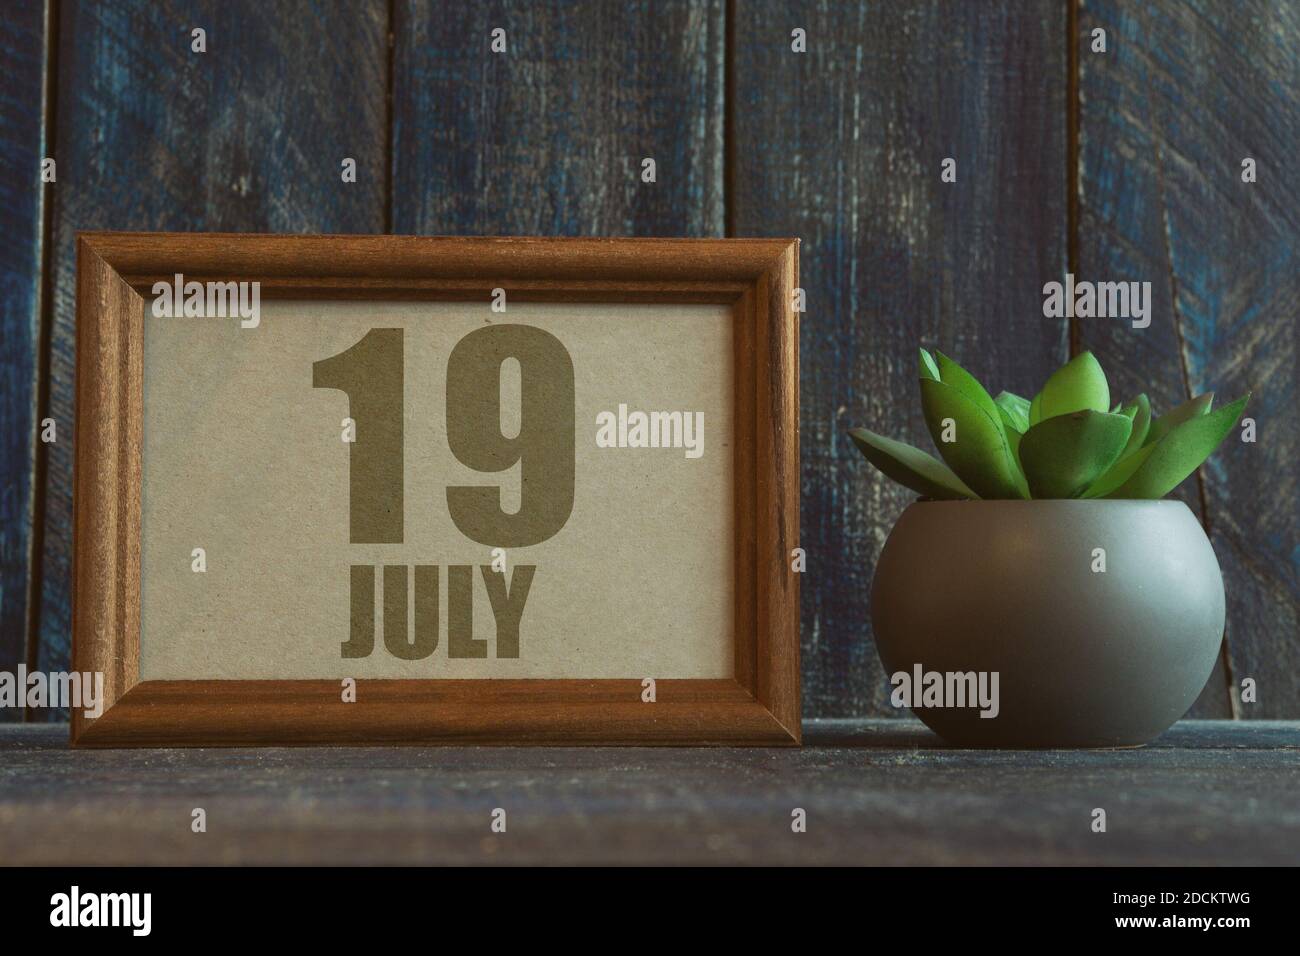 juli. Tag 19 des Monats, Datum im Rahmen neben Sukkulenten auf hölzernen Hintergrund Sommermonat, Tag des Jahres Konzept. Stockfoto